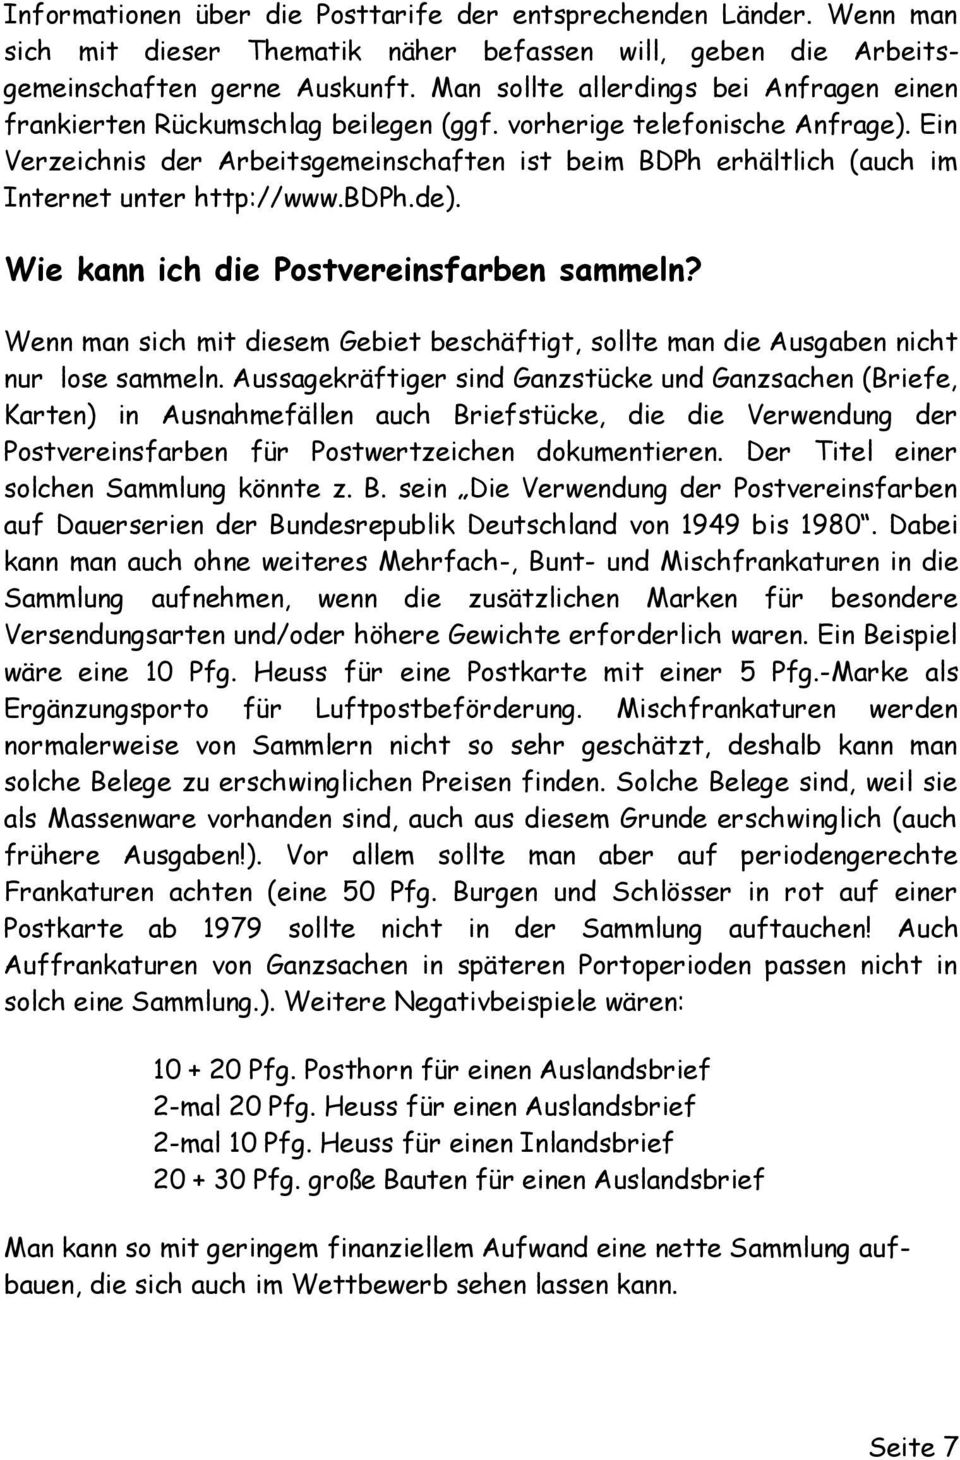 Ein Verzeichnis der Arbeitsgemeinschaften ist beim BDPh erhältlich (auch im Internet unter http://www.bdph.de). Wie kann ich die Postvereinsfarben sammeln?